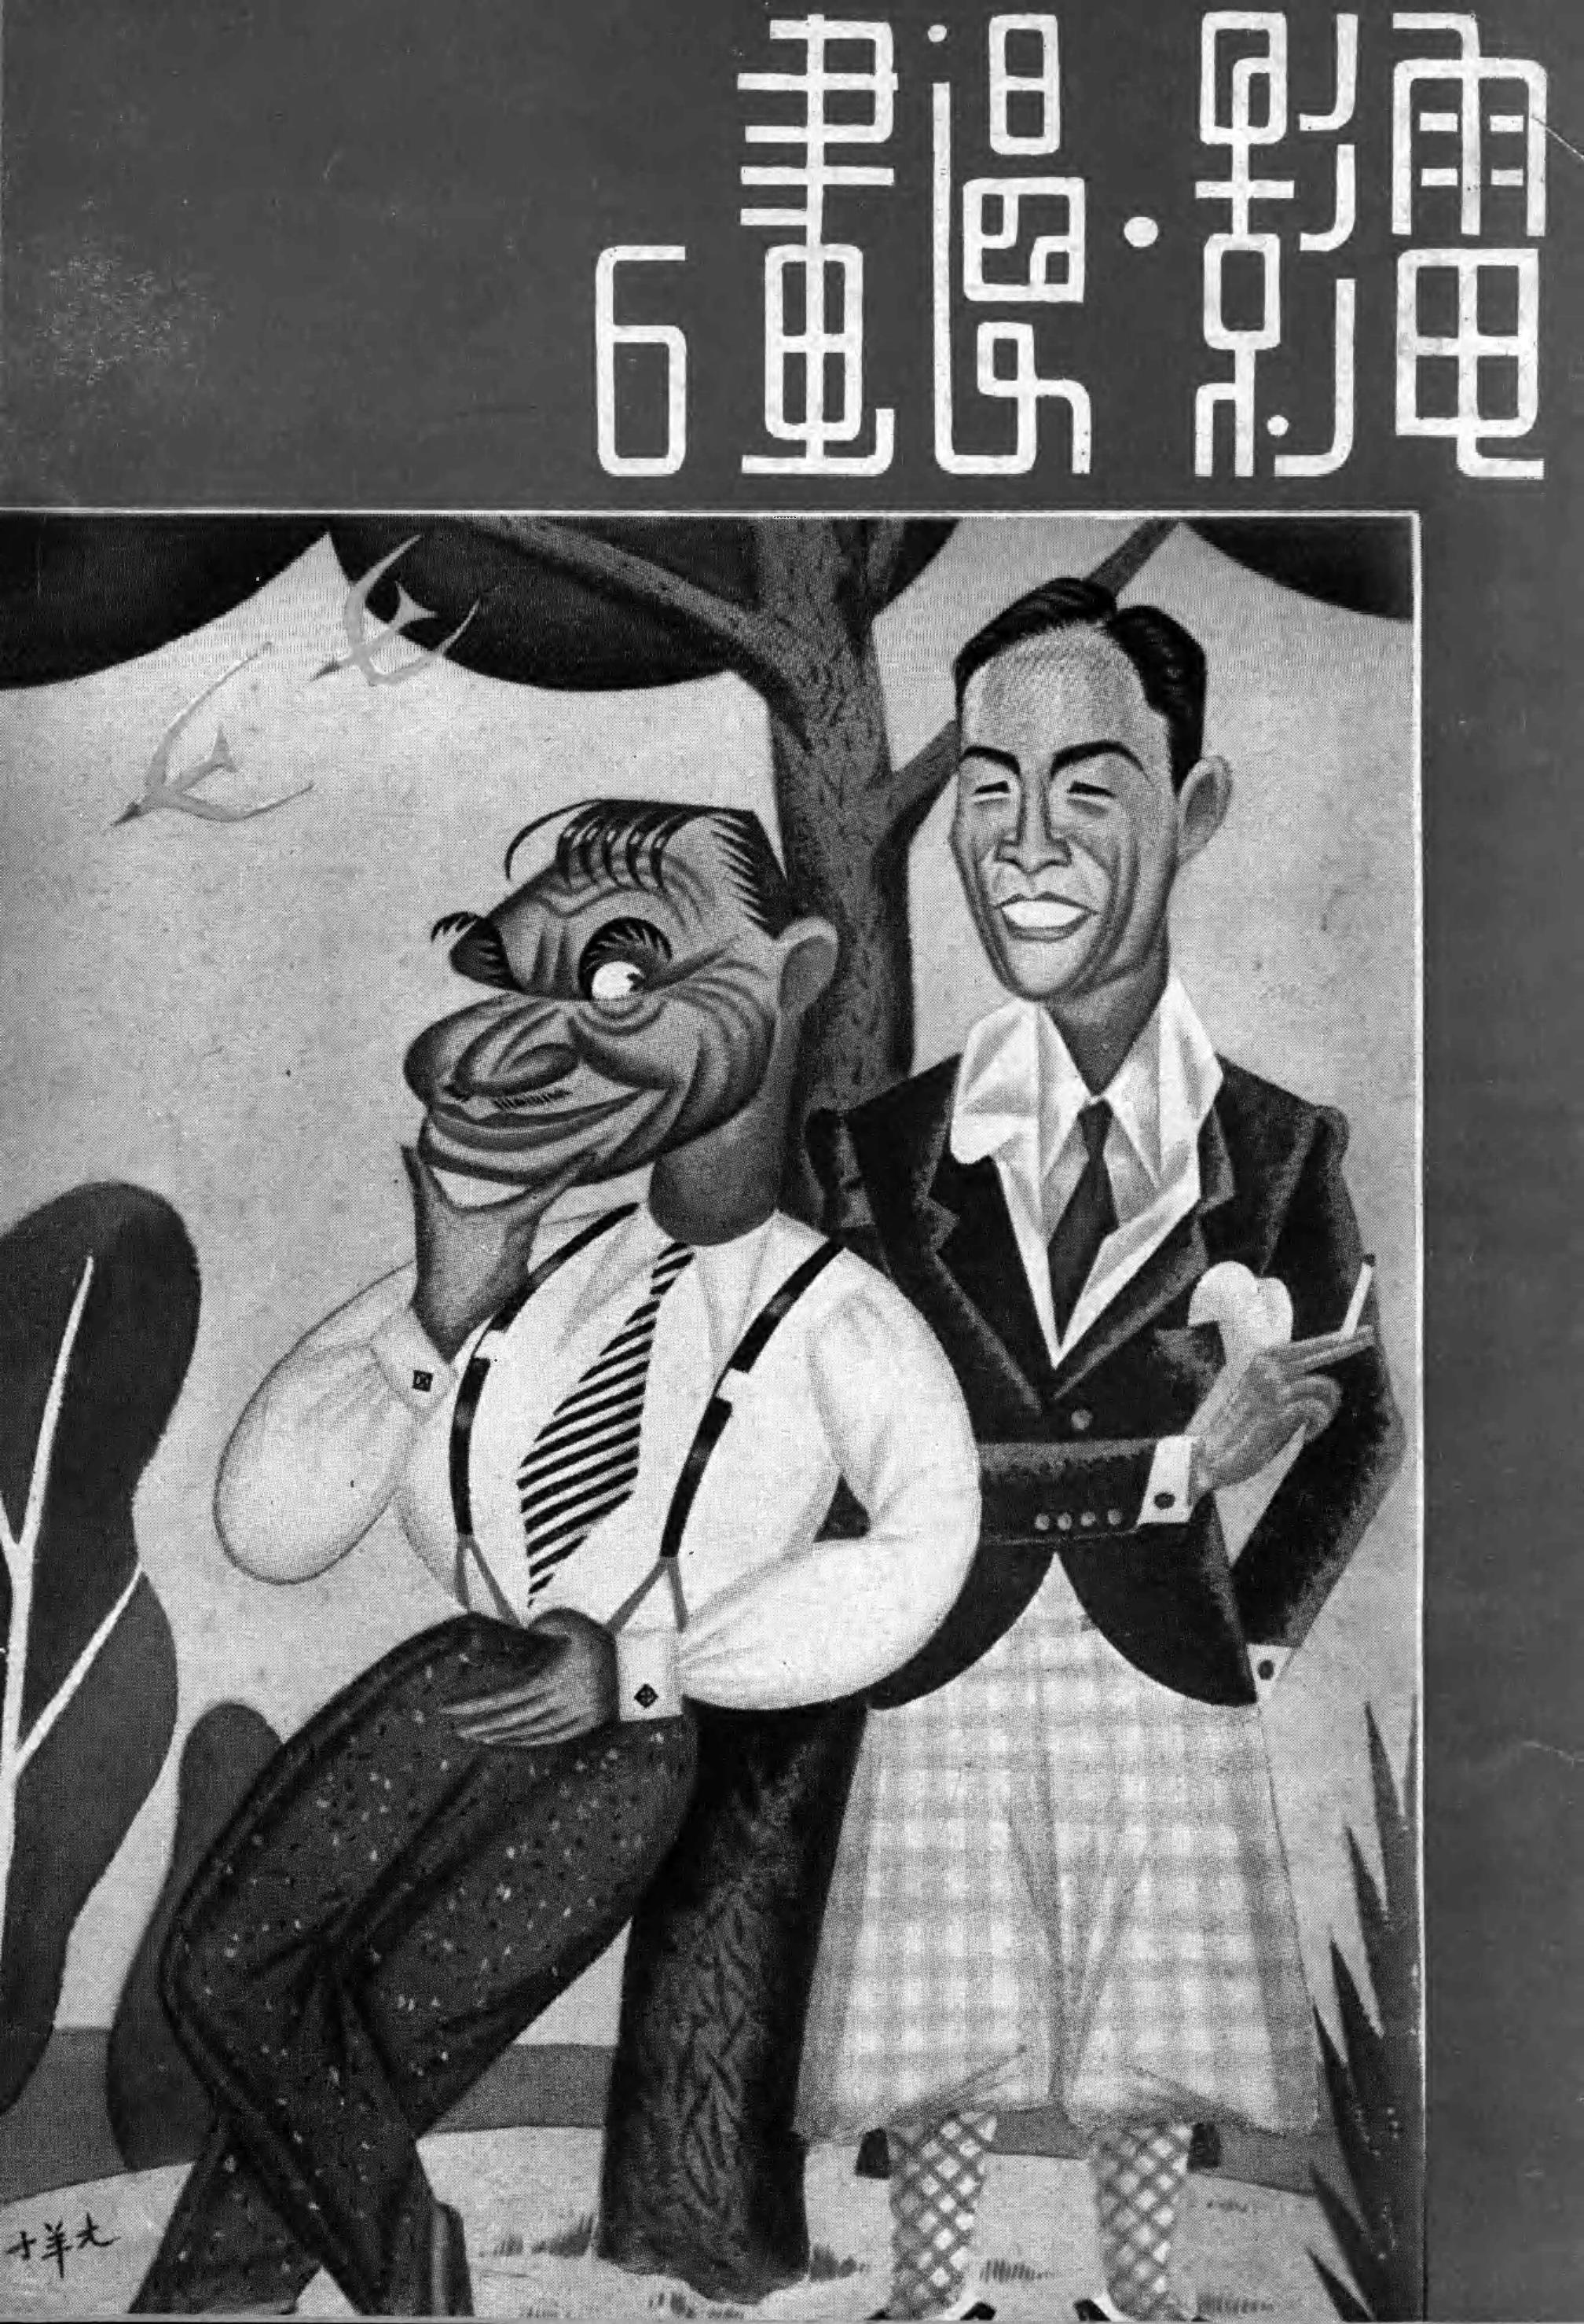 Movie Sketch [November 1935] | Media History Digital Library